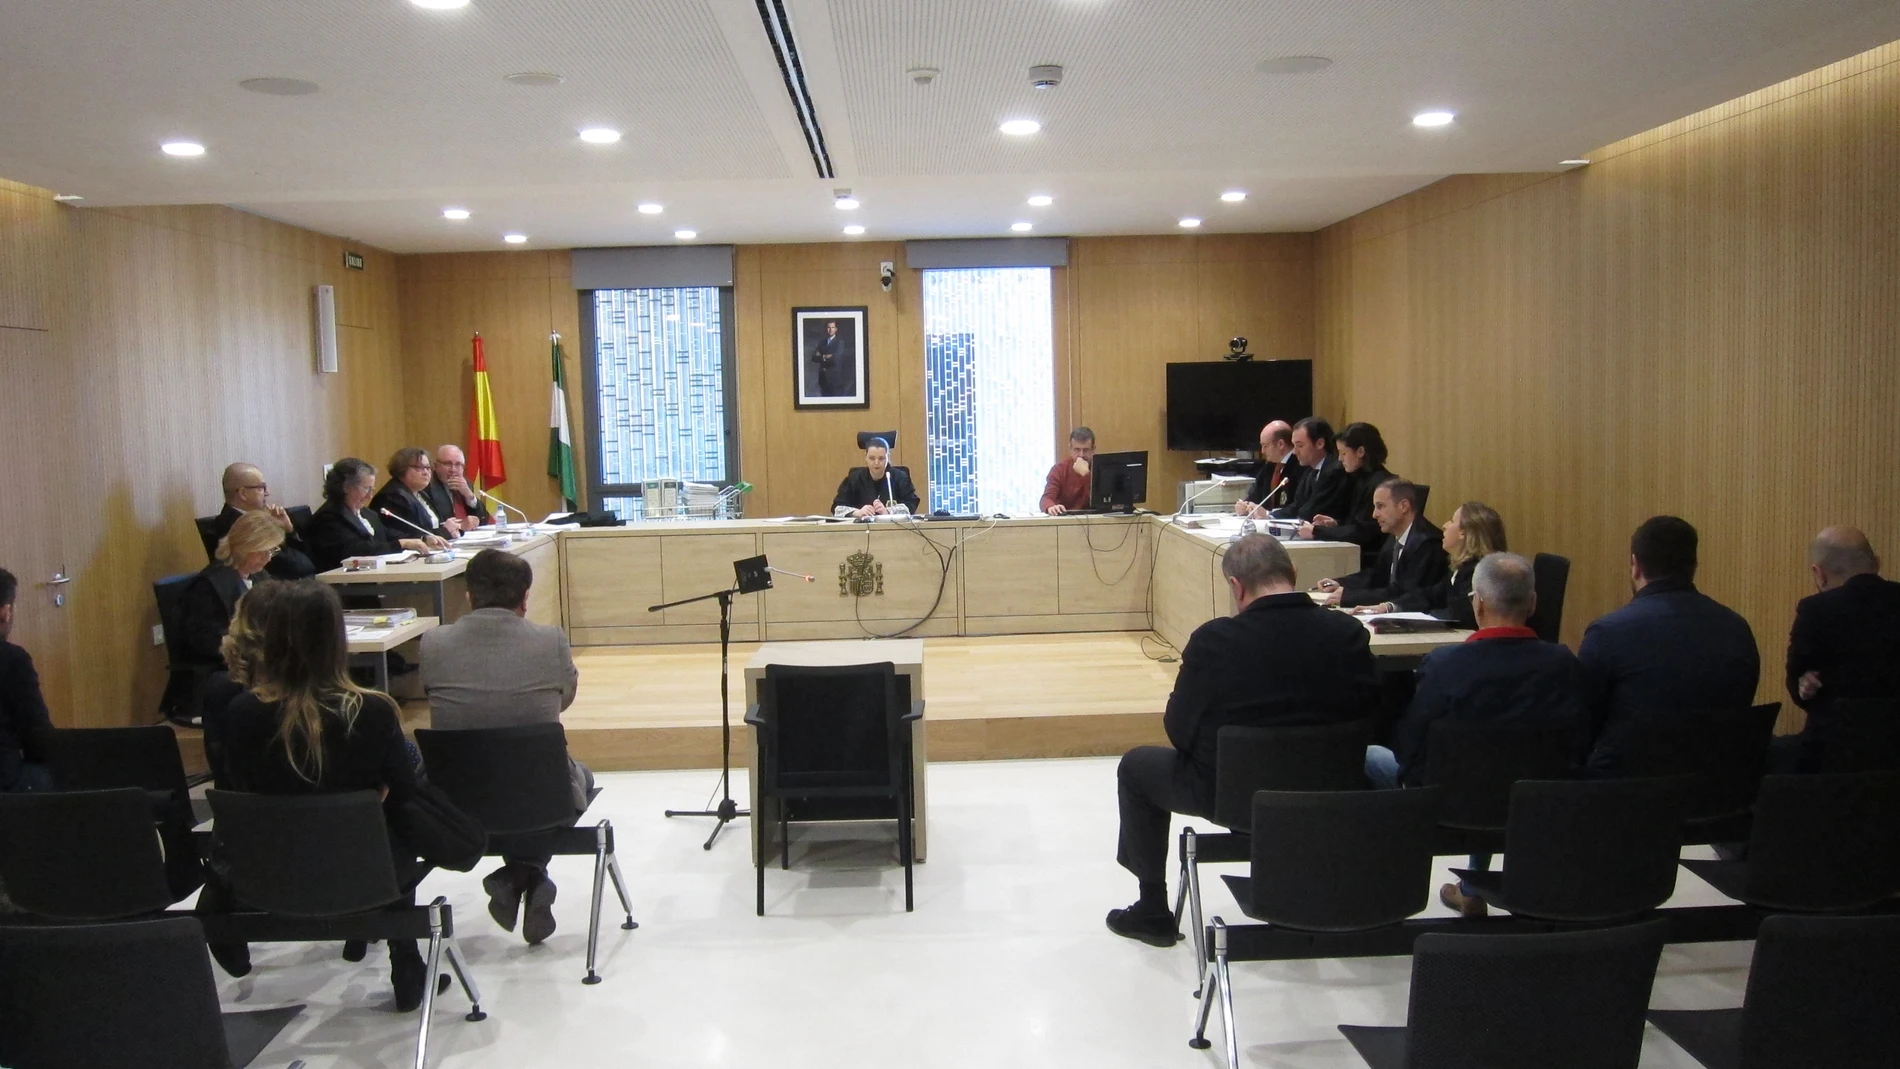 Celebración del juicio de los cursos de formación de la Junta en Córdoba